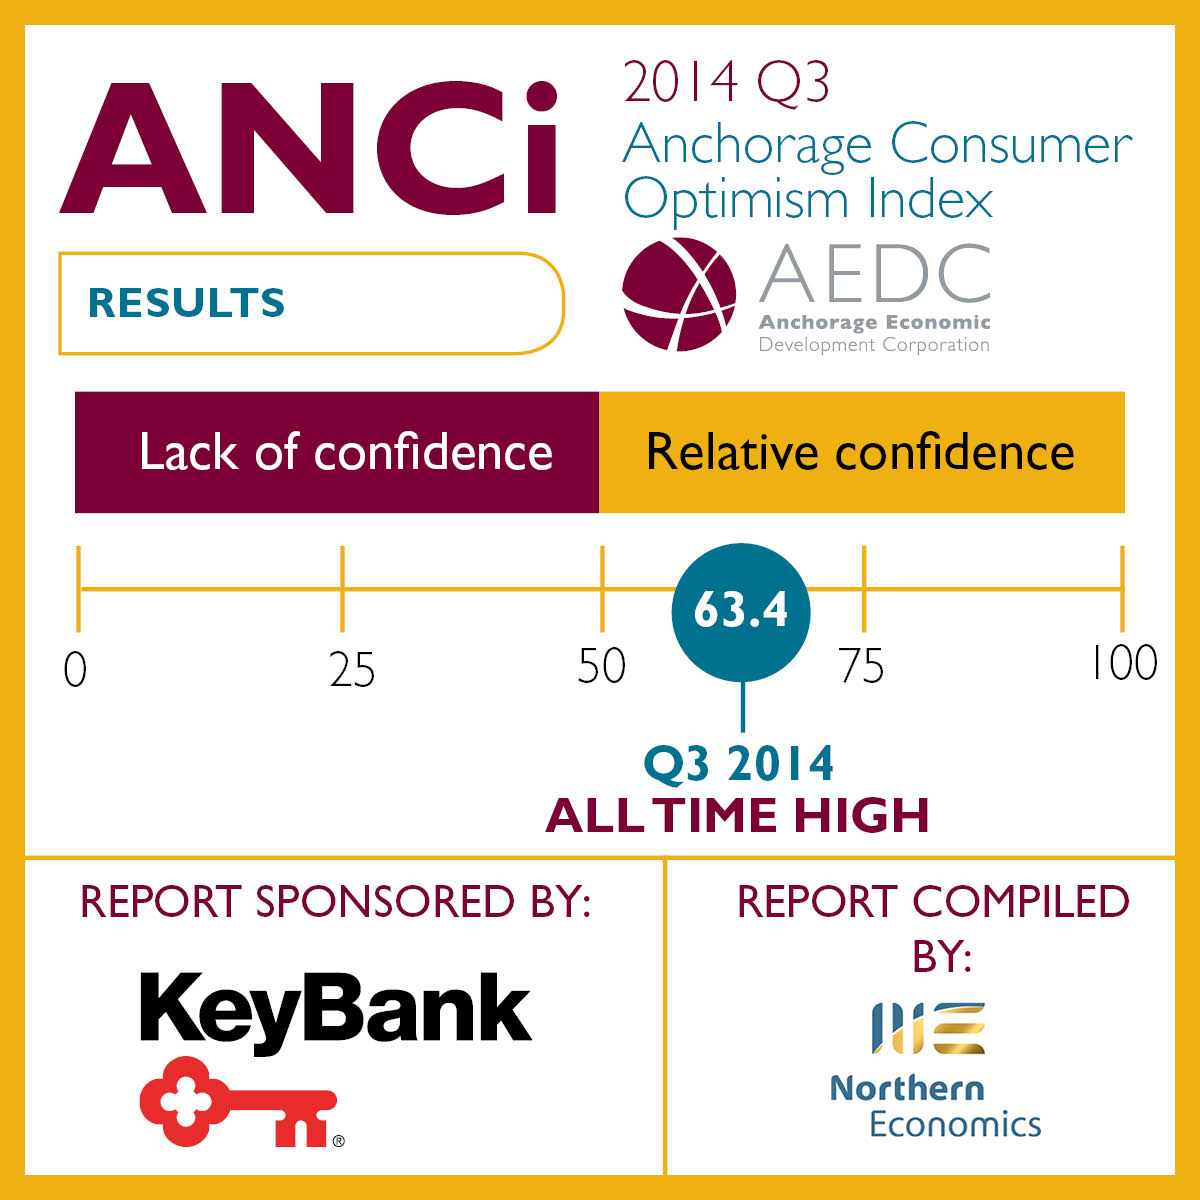 Anchorage Consumer Optimism Index: 2014 Q3